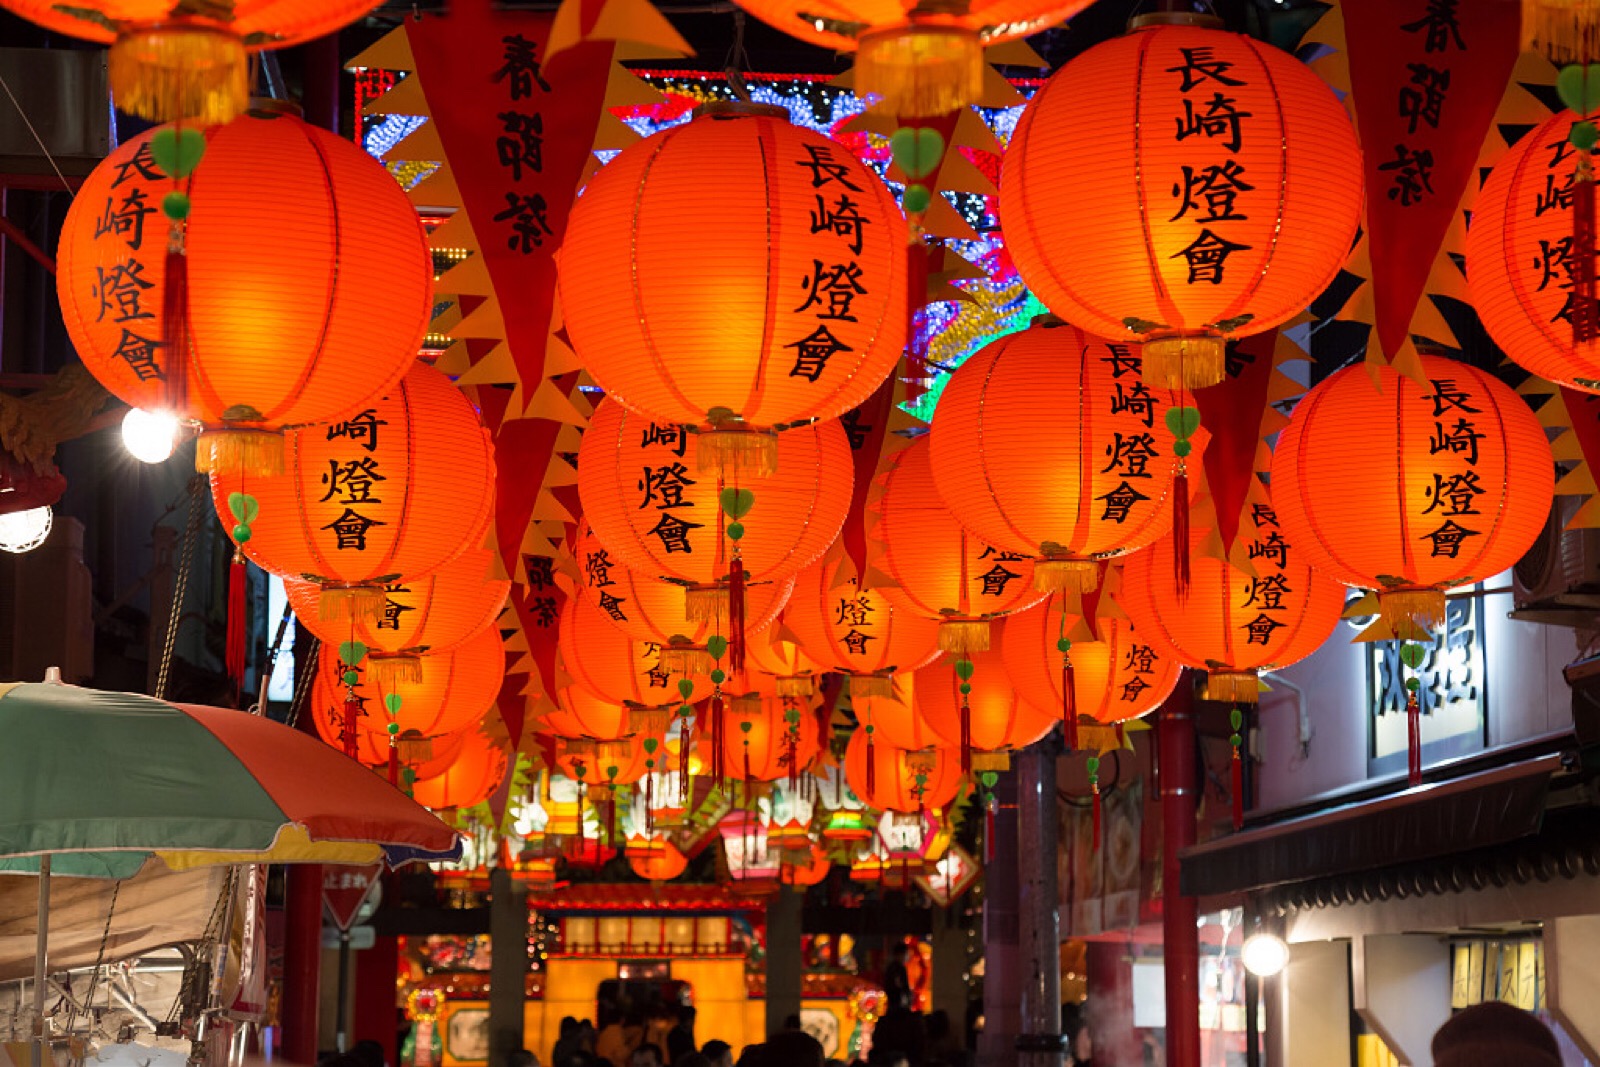 元宵节,中国传统节日,有哪些习俗呢?一起来说一说吧.